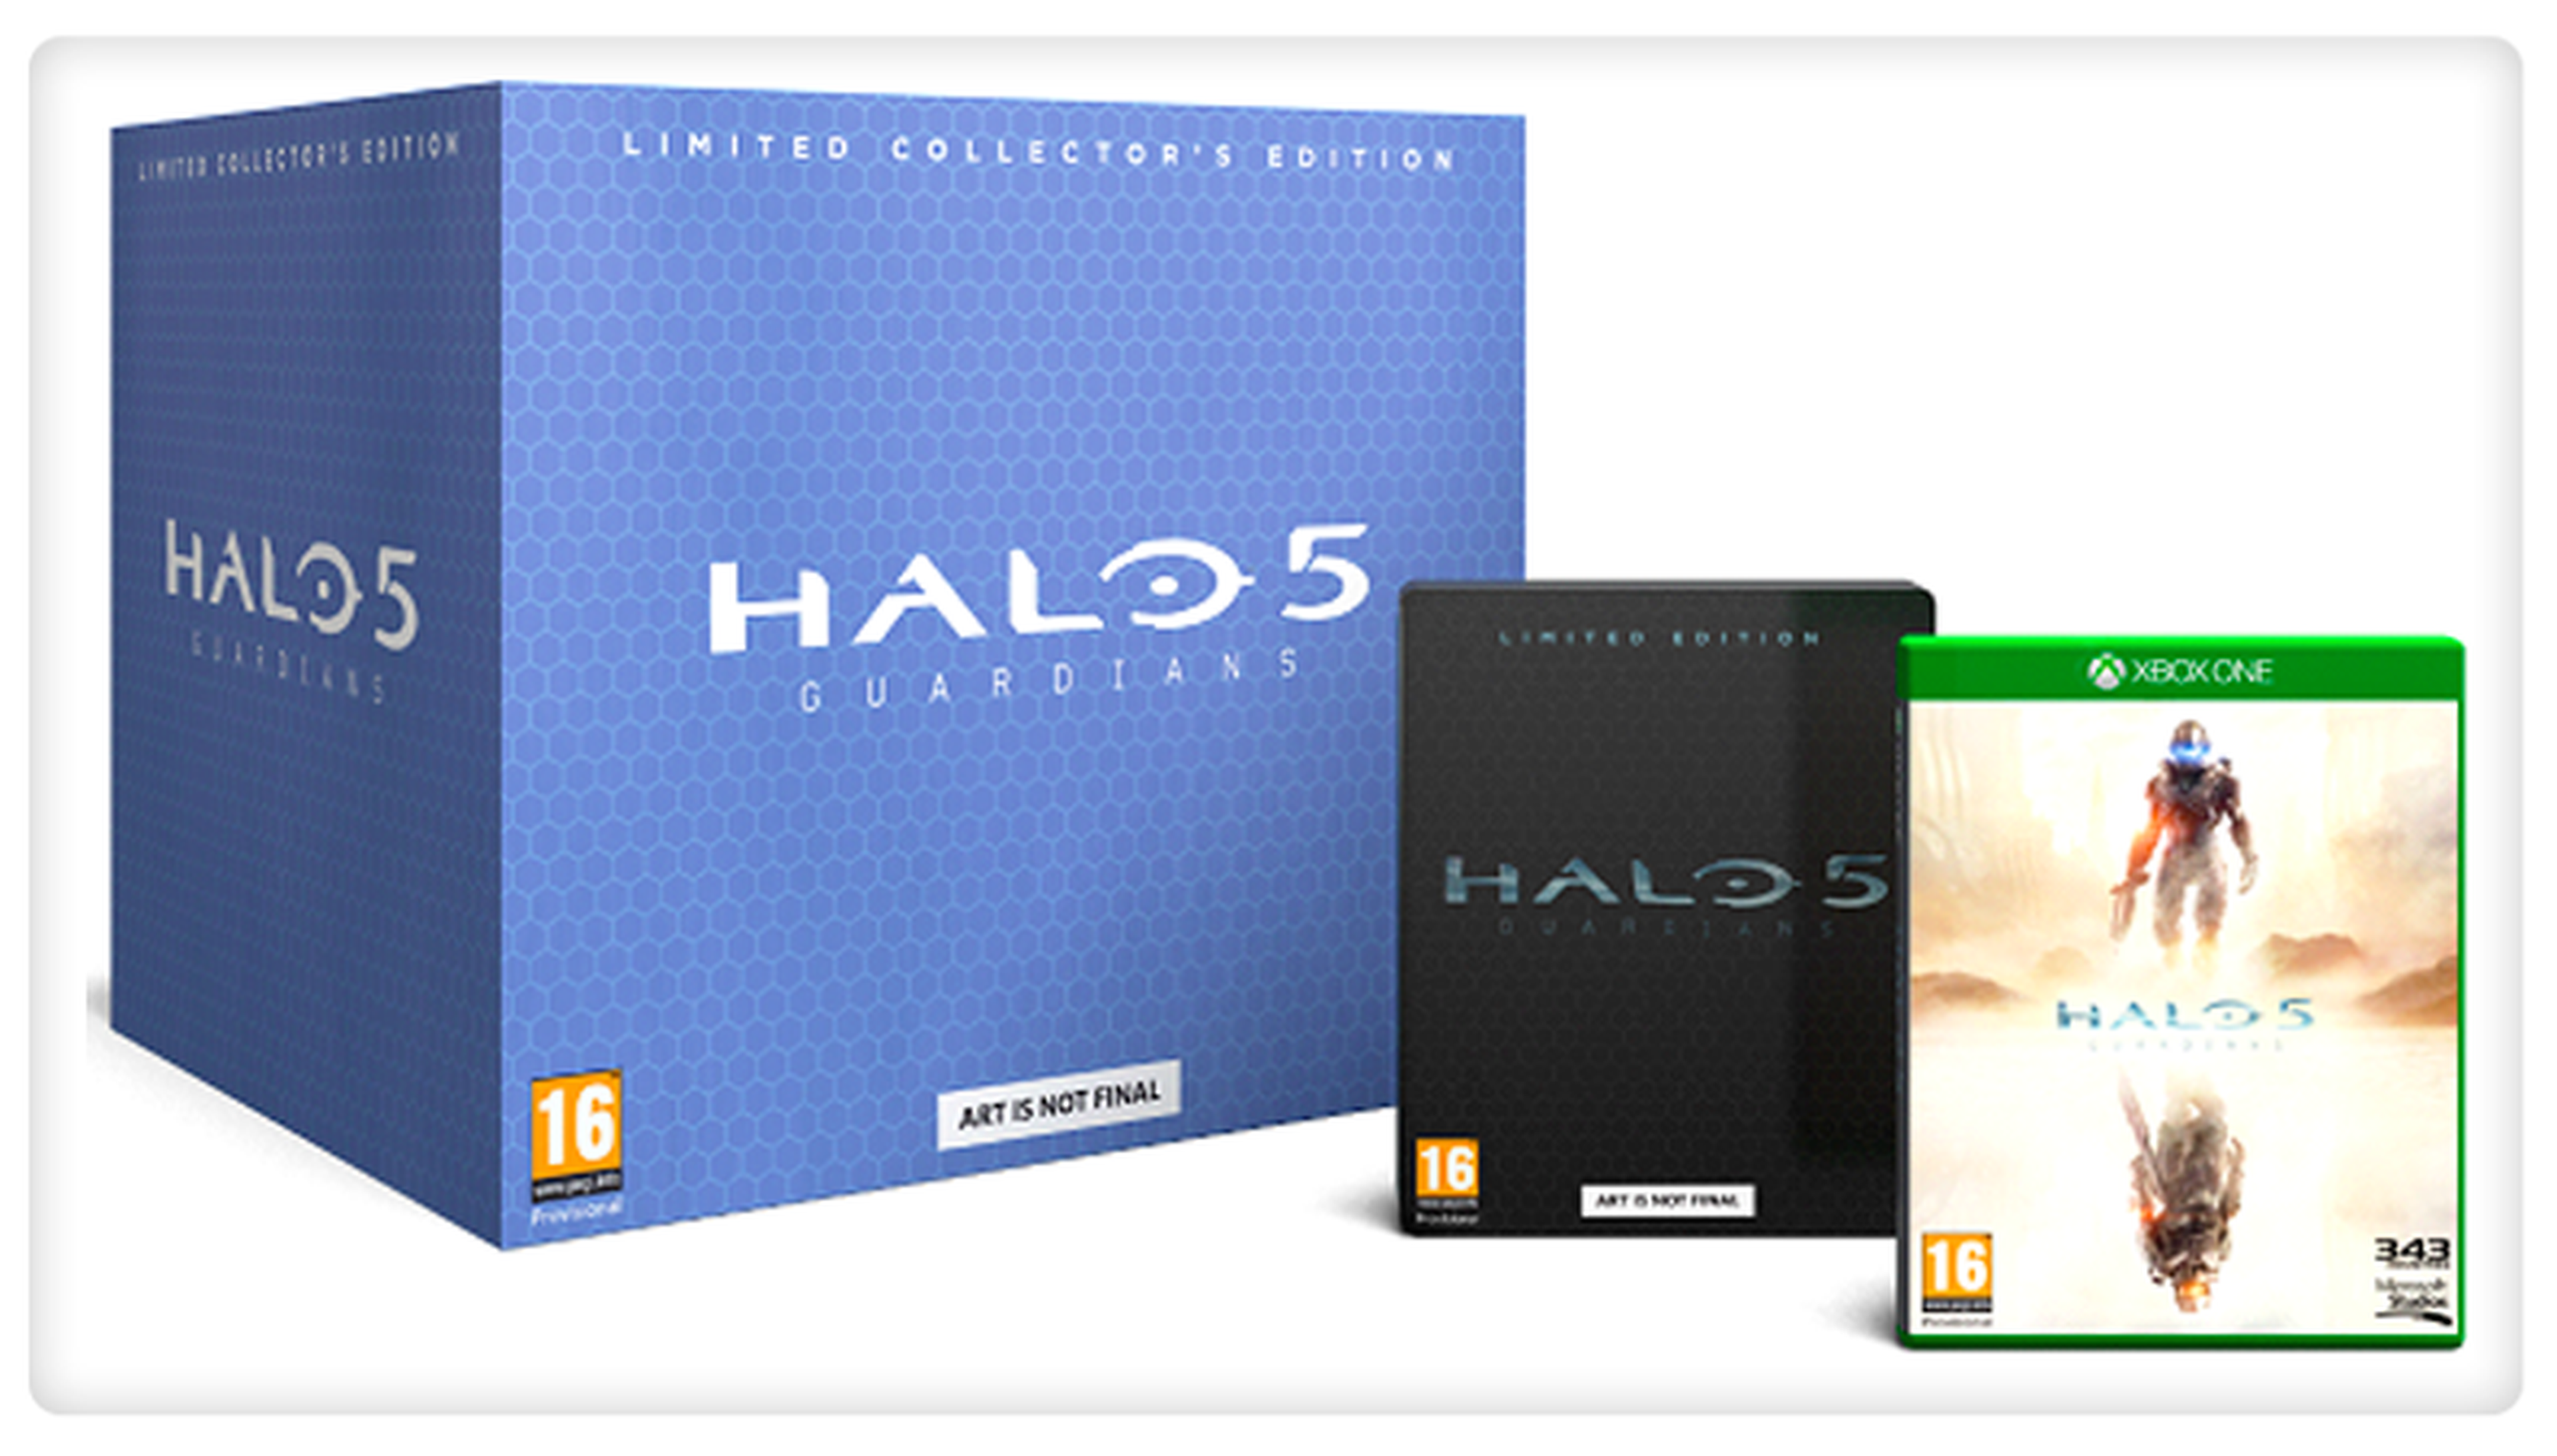 GAME venderá en exclusiva la Edición Coleccionista de Halo 5: Guardians